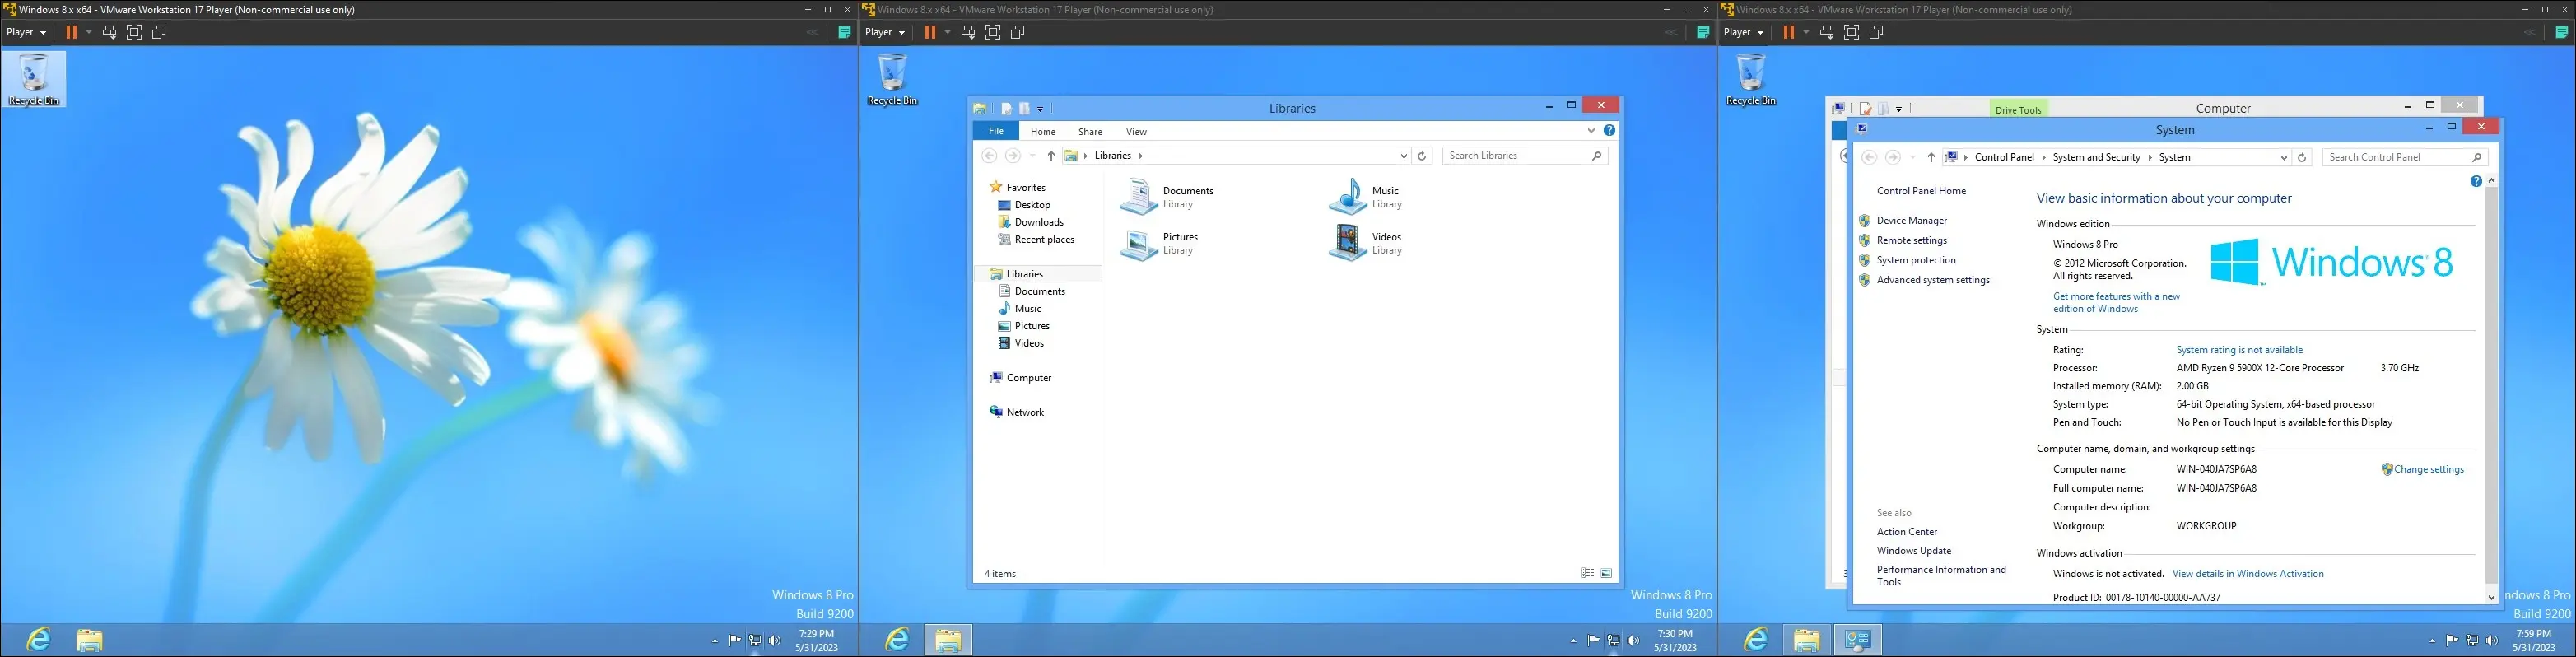 虛擬機上的 Windows 8 圖像，顯示桌面、資源管理器界面和“關於計算機頁面”